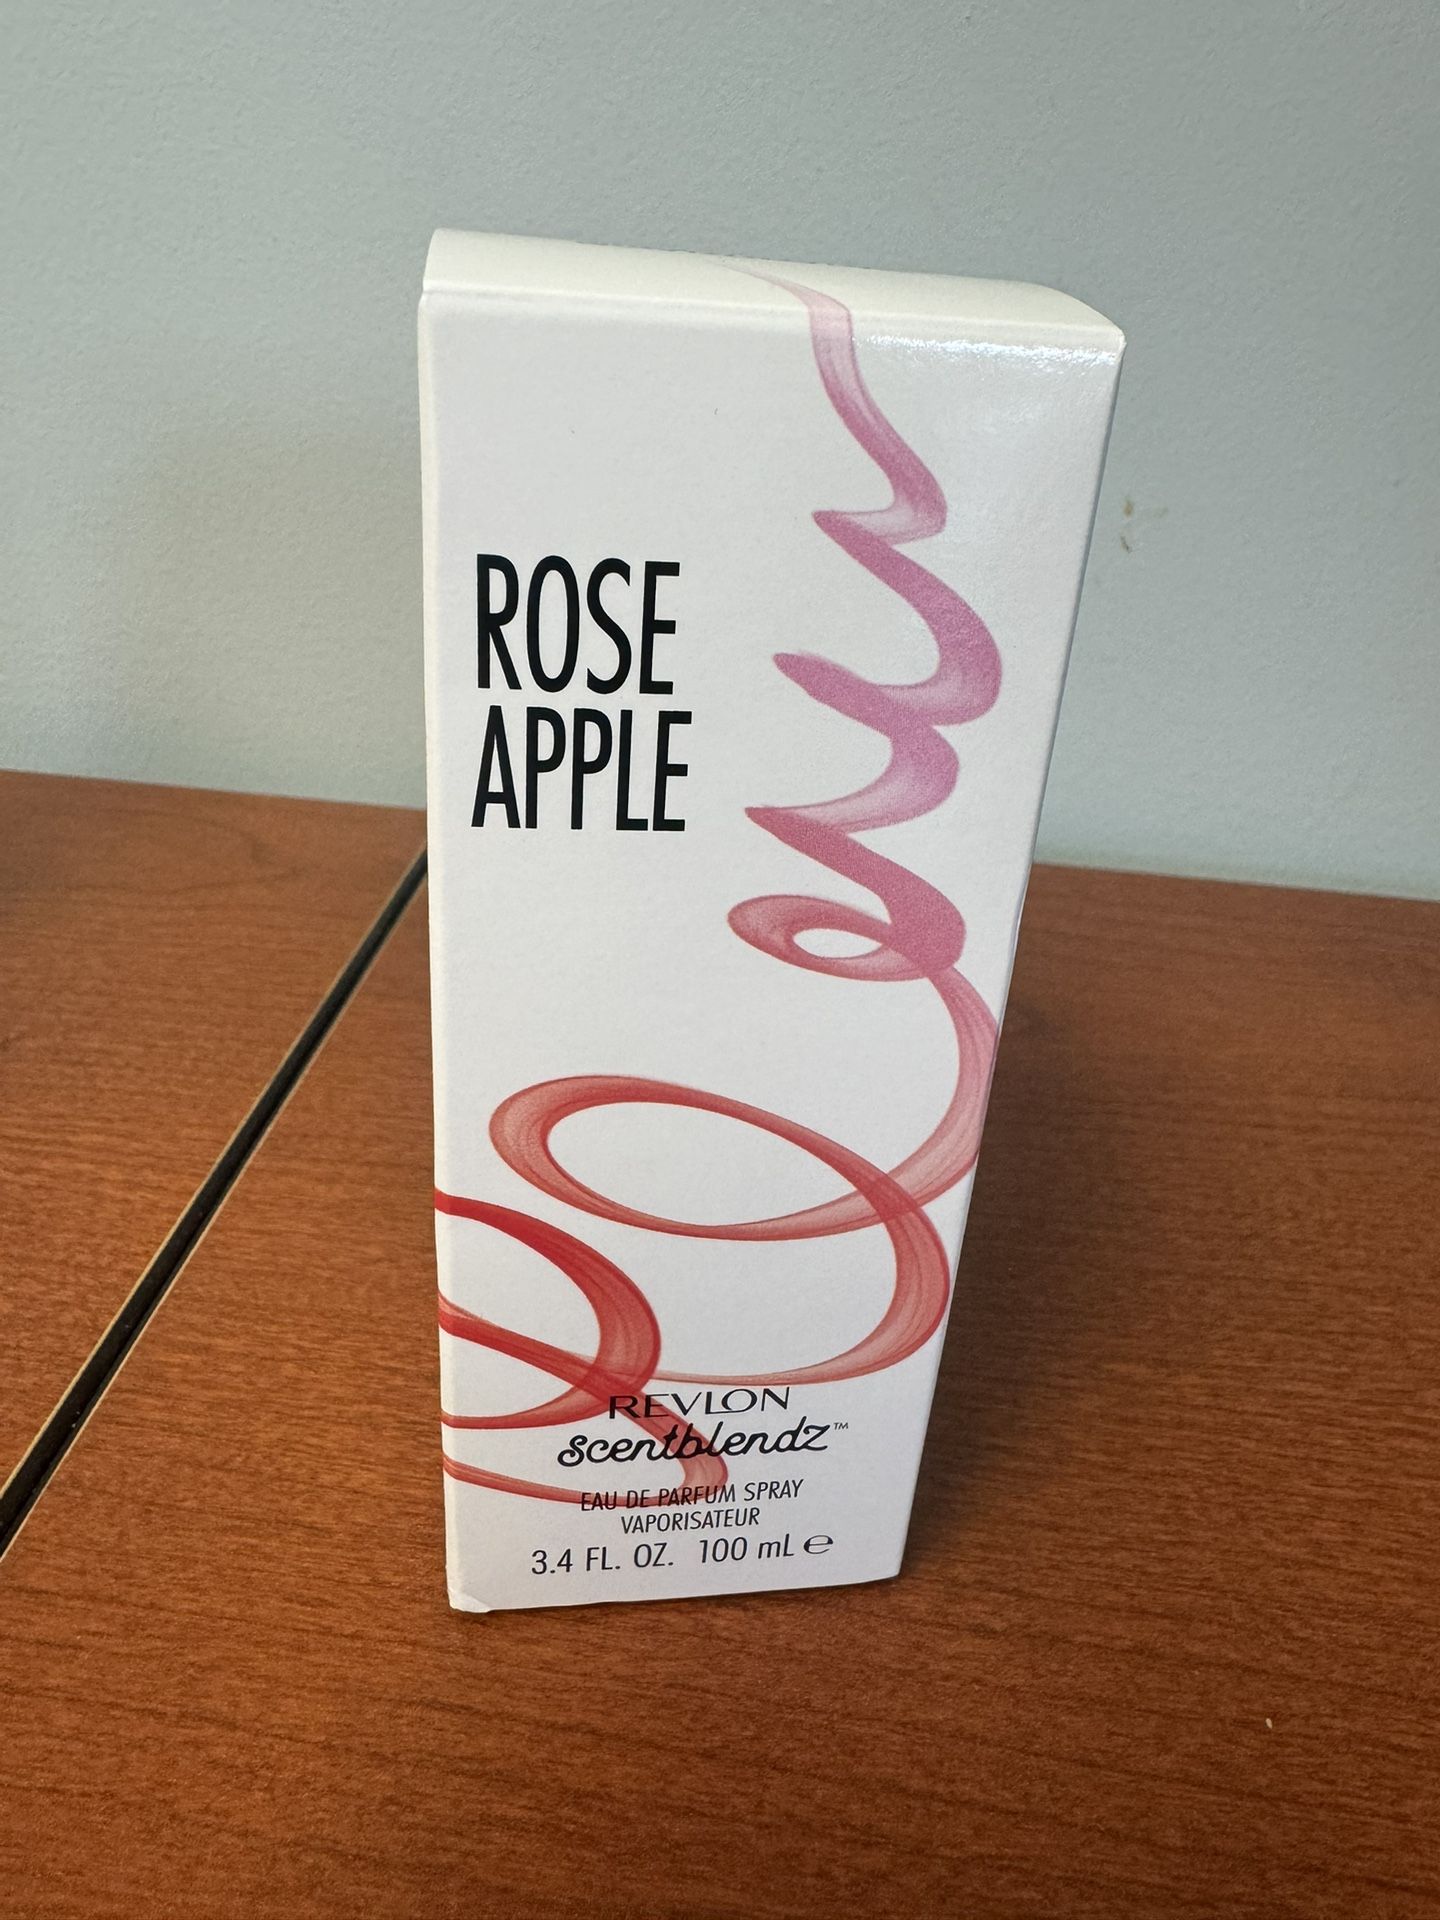 Revlon Scentblendz Rose Apple Eau De Parfum, Perfume for Women, 3.4 oz